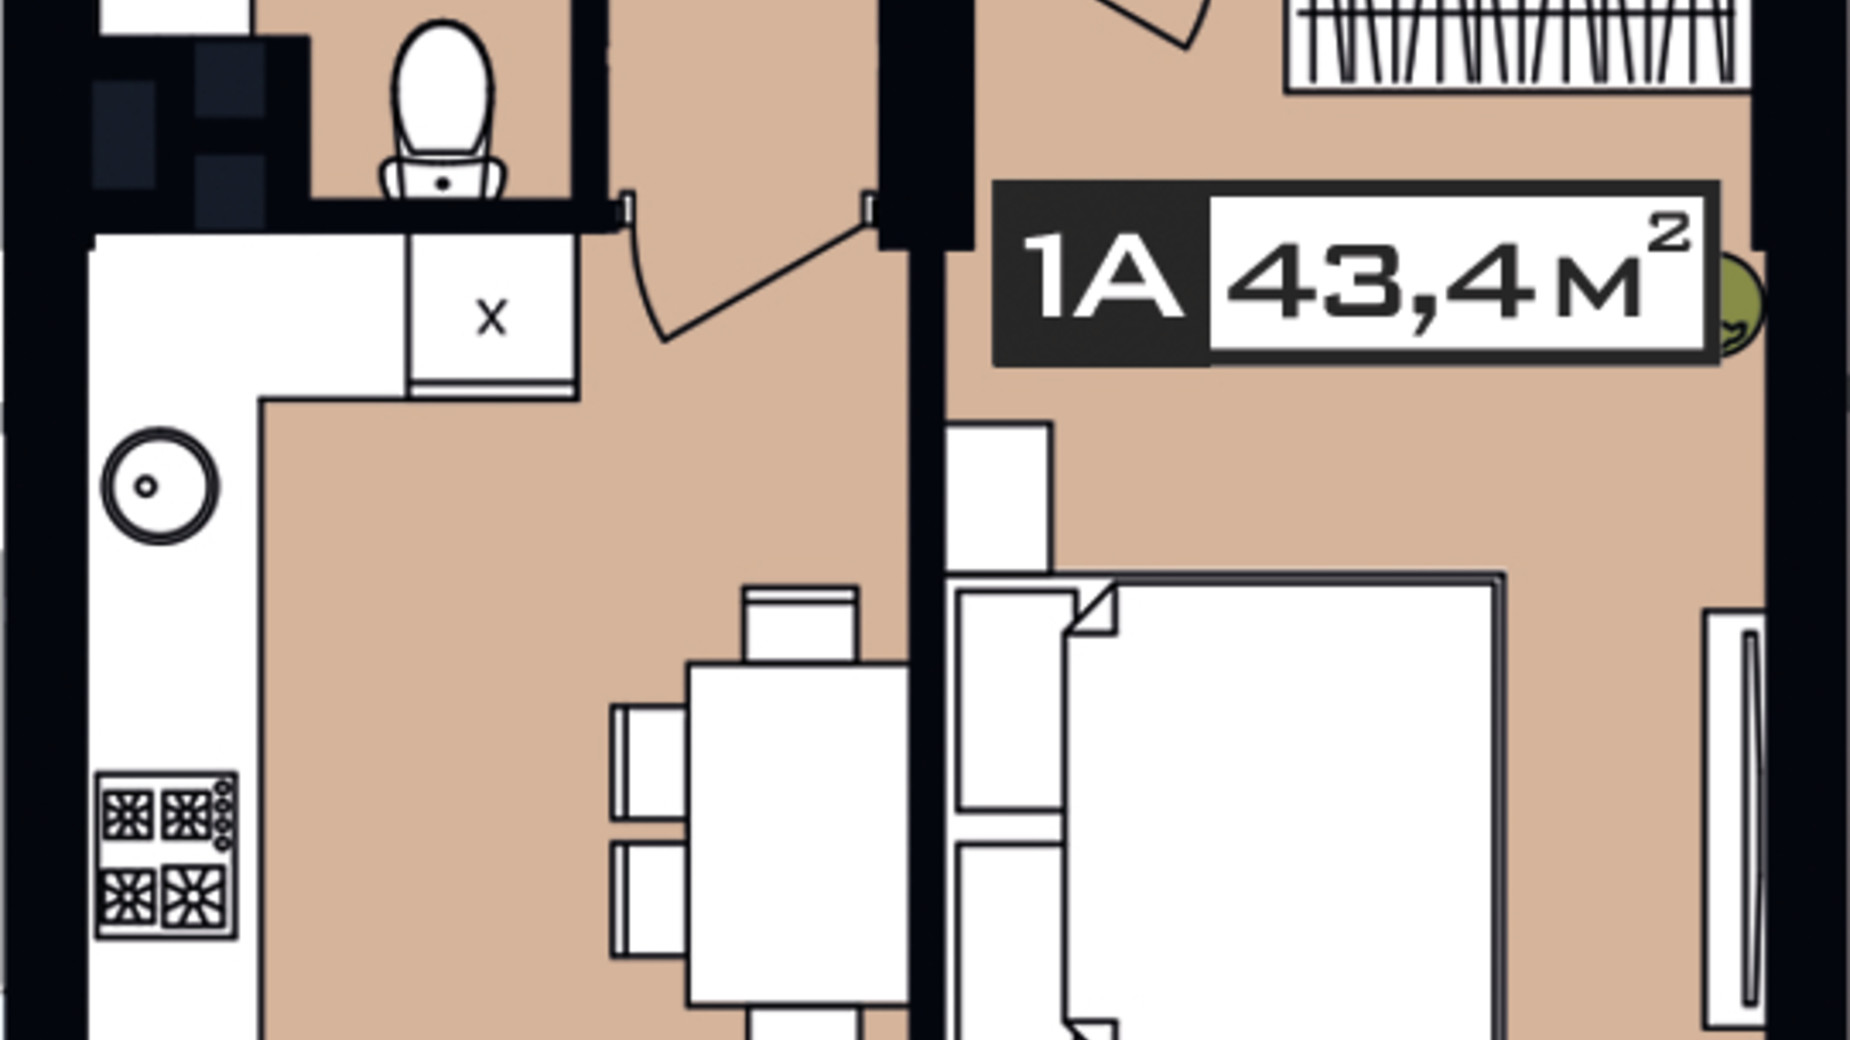 Планировка 1-комнатной квартиры в ЖК Peyot 43.4 м², фото 506435